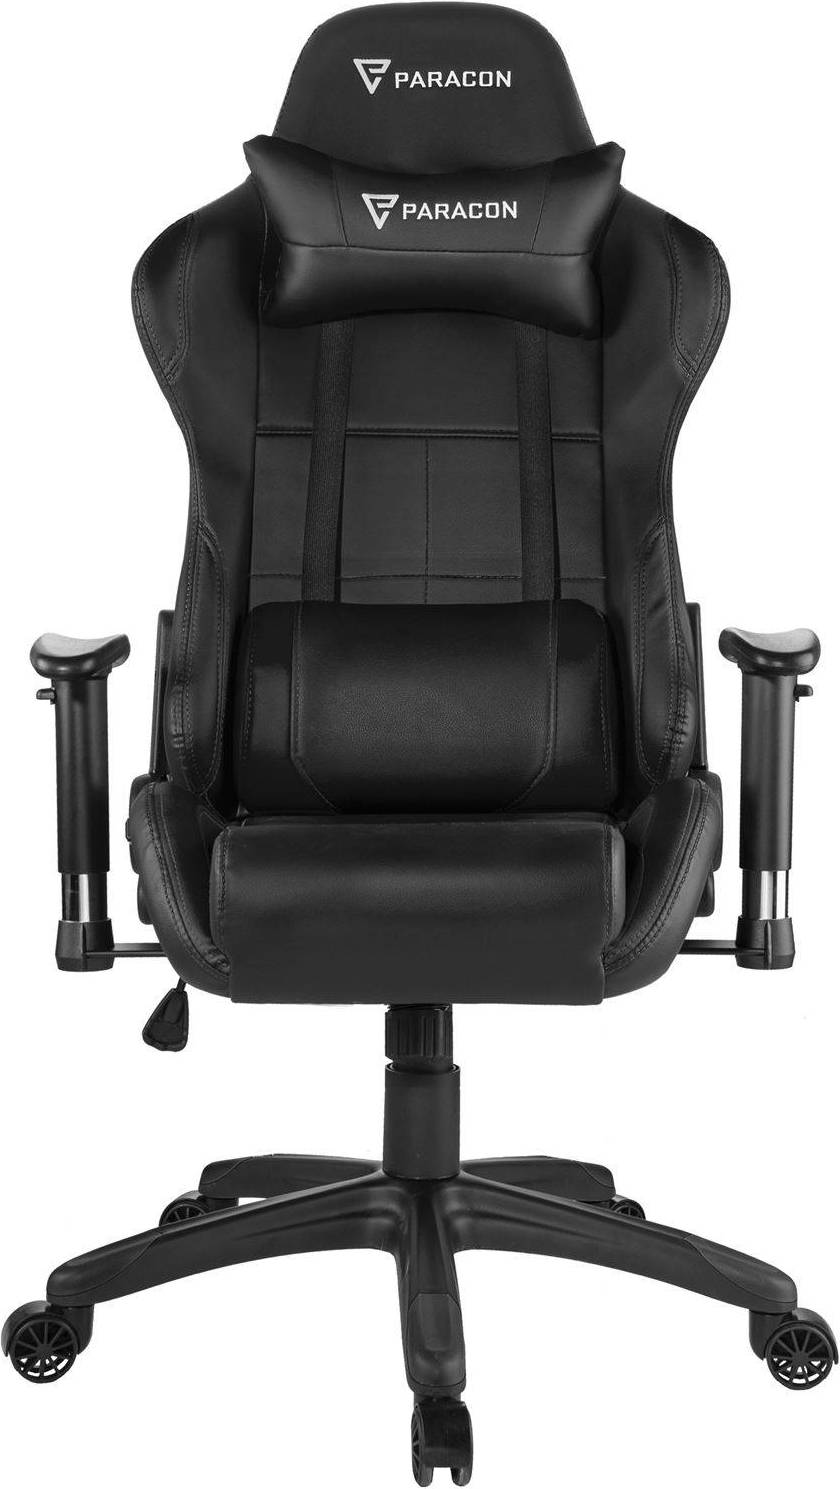  Bild på Paracon Rogue Gaming Chair - Black gamingstol